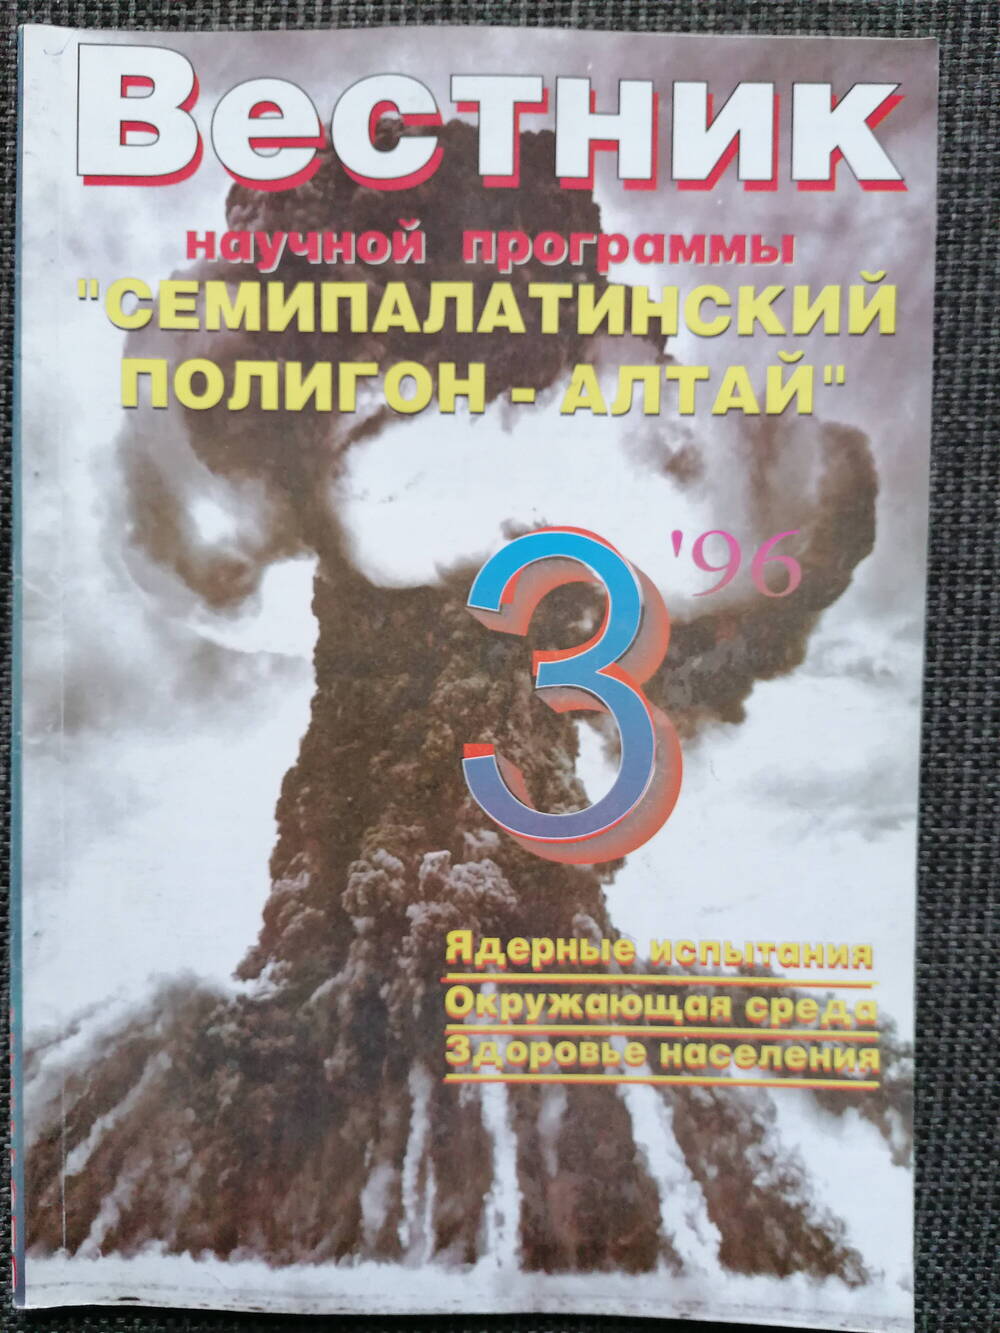 Журнал Вестник научной программы Семипалатинский полигон - Алтай. №3, 1996 г.